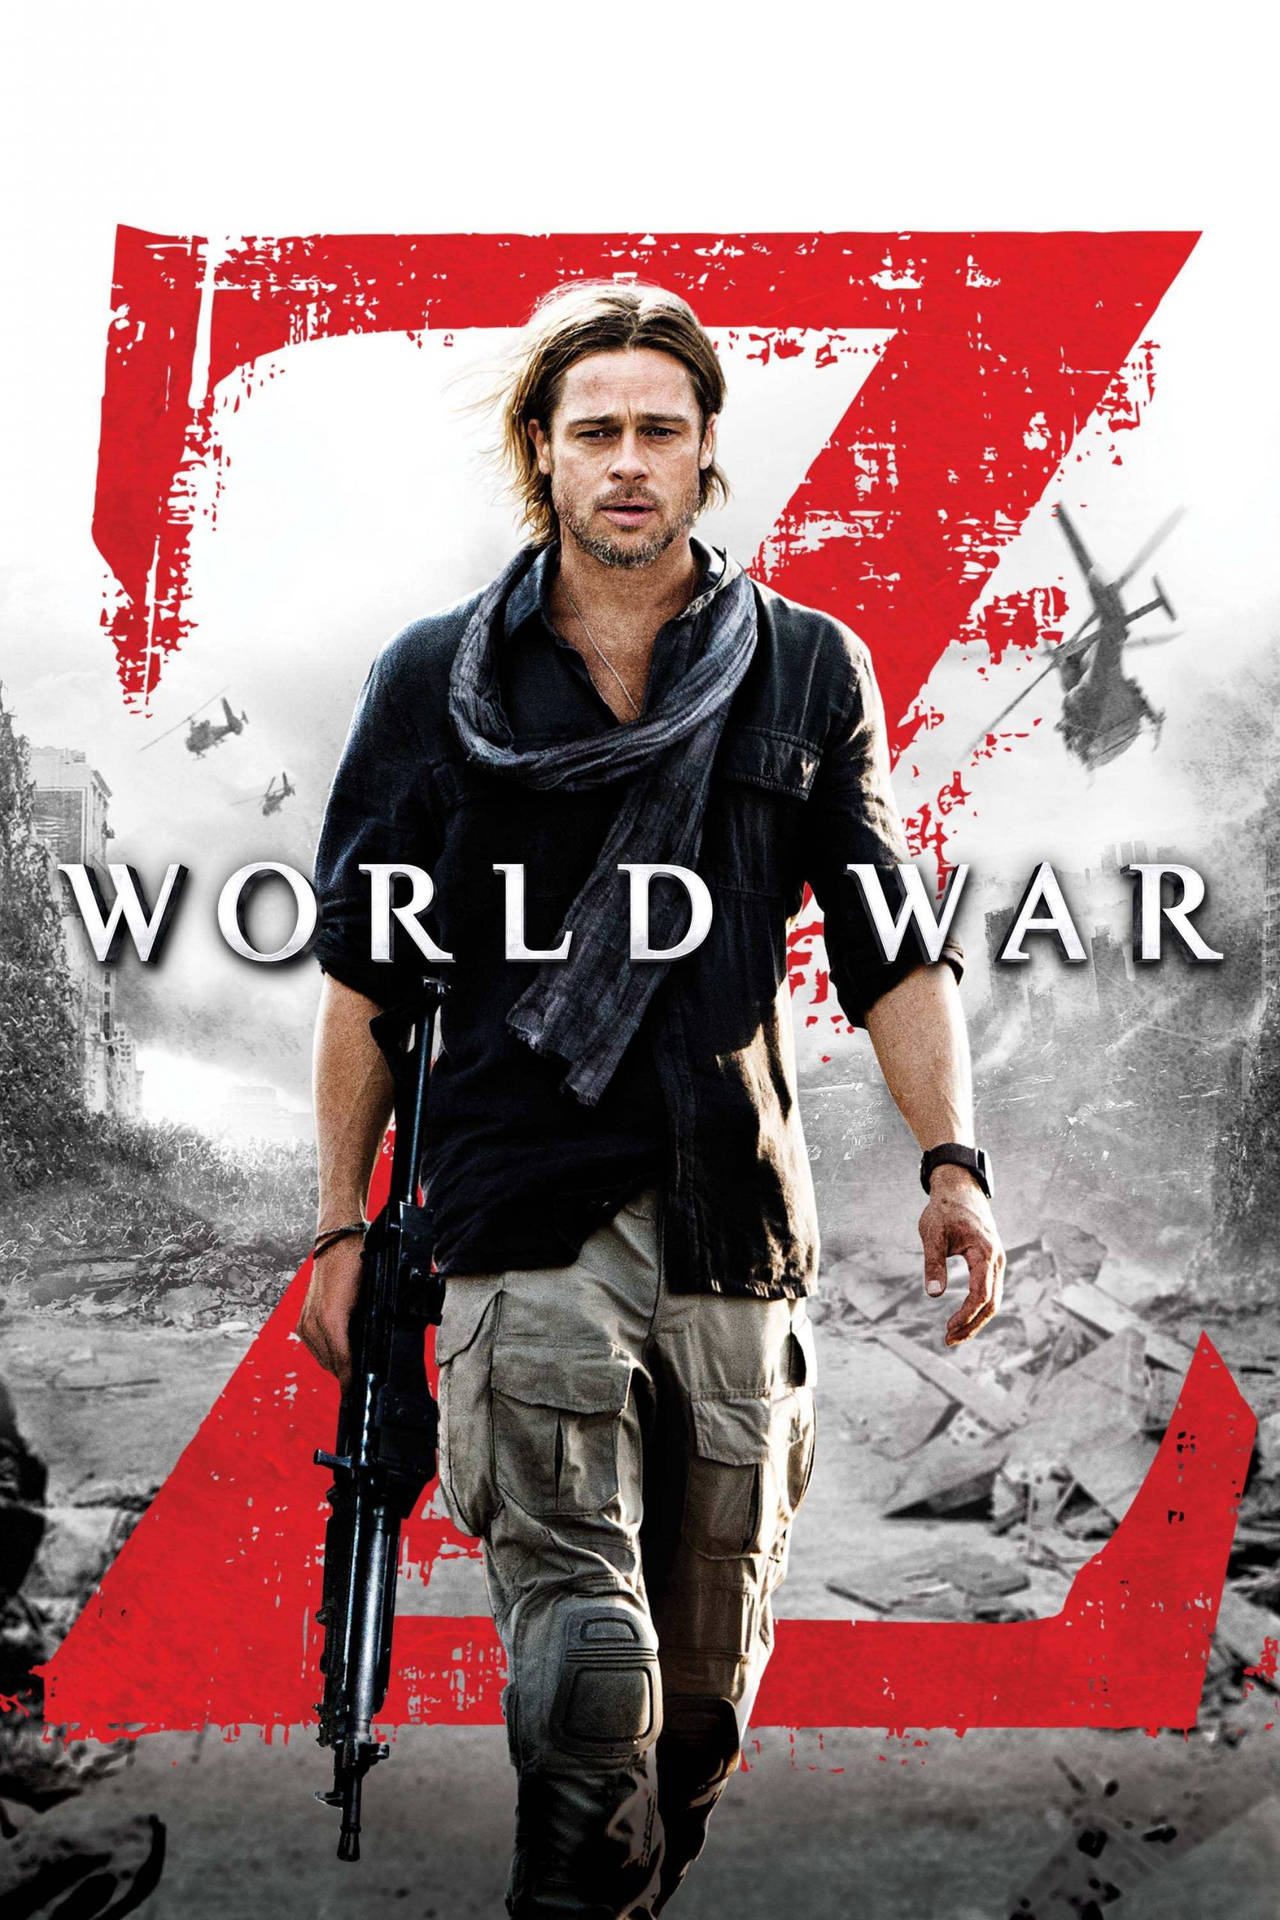 World War Z Movie Poster Background